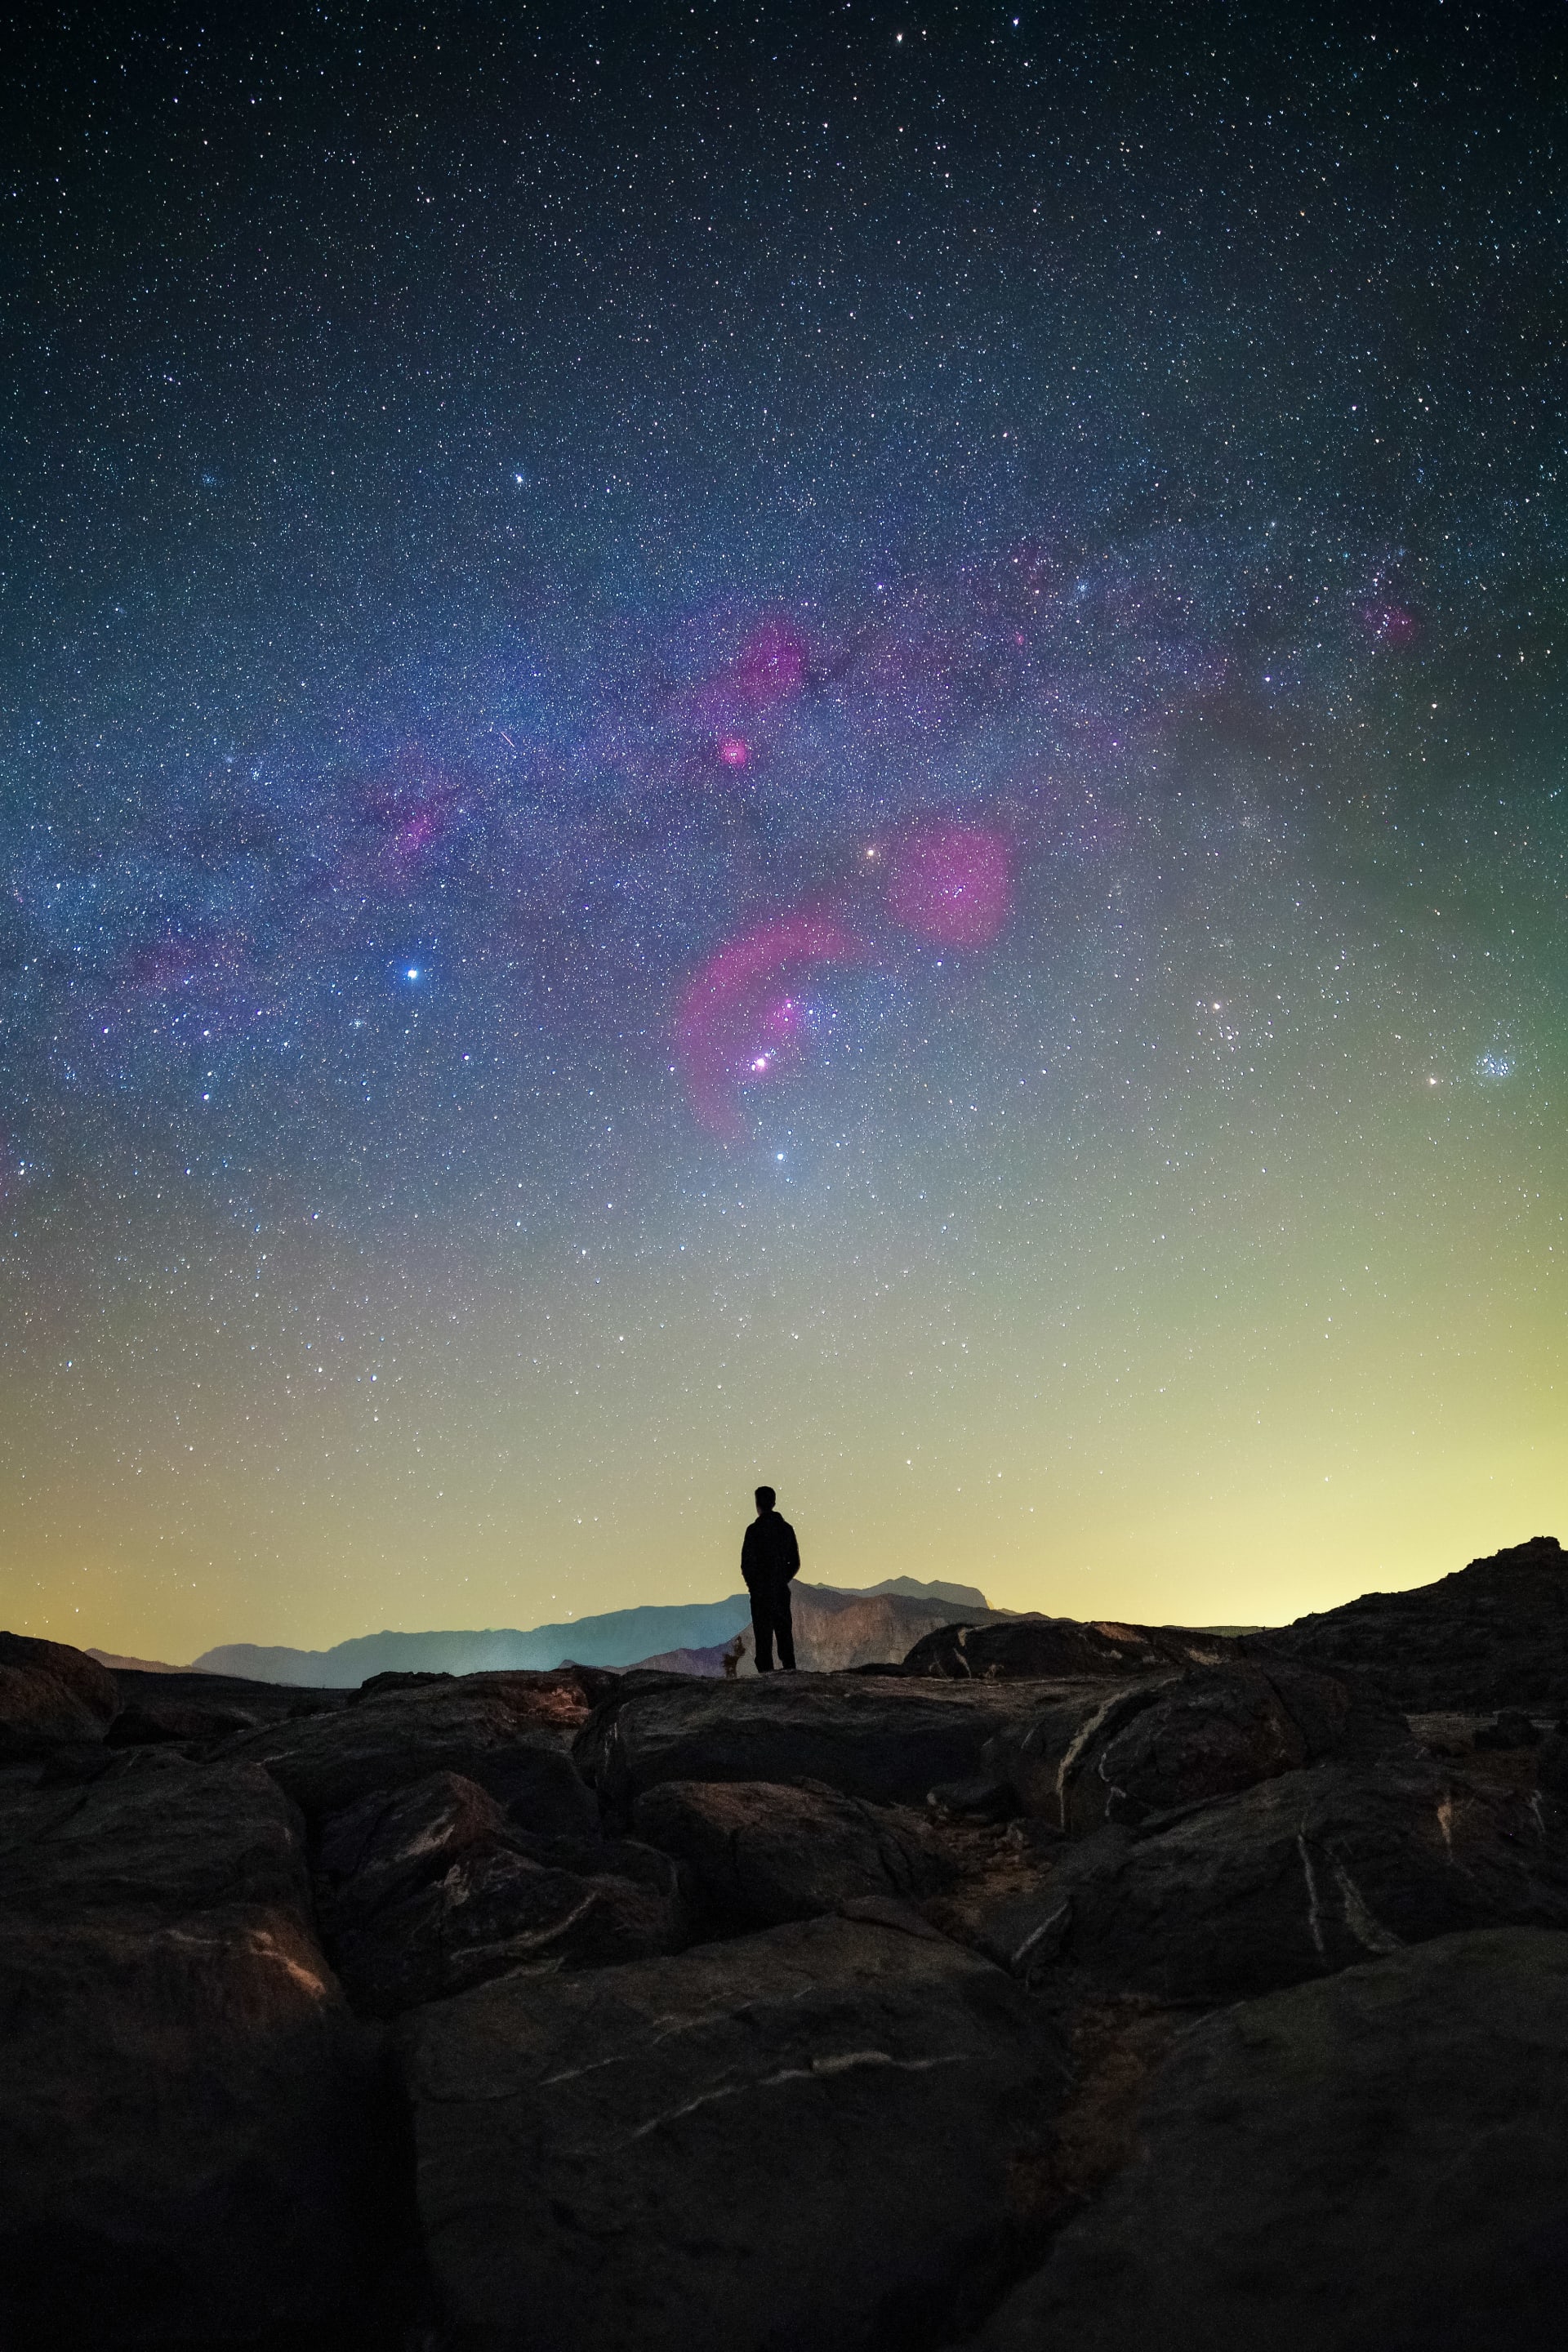 في سلطنة عُمان.. شاهد روائع الكون من محمية الحجر الغربي لأضواء النجوم